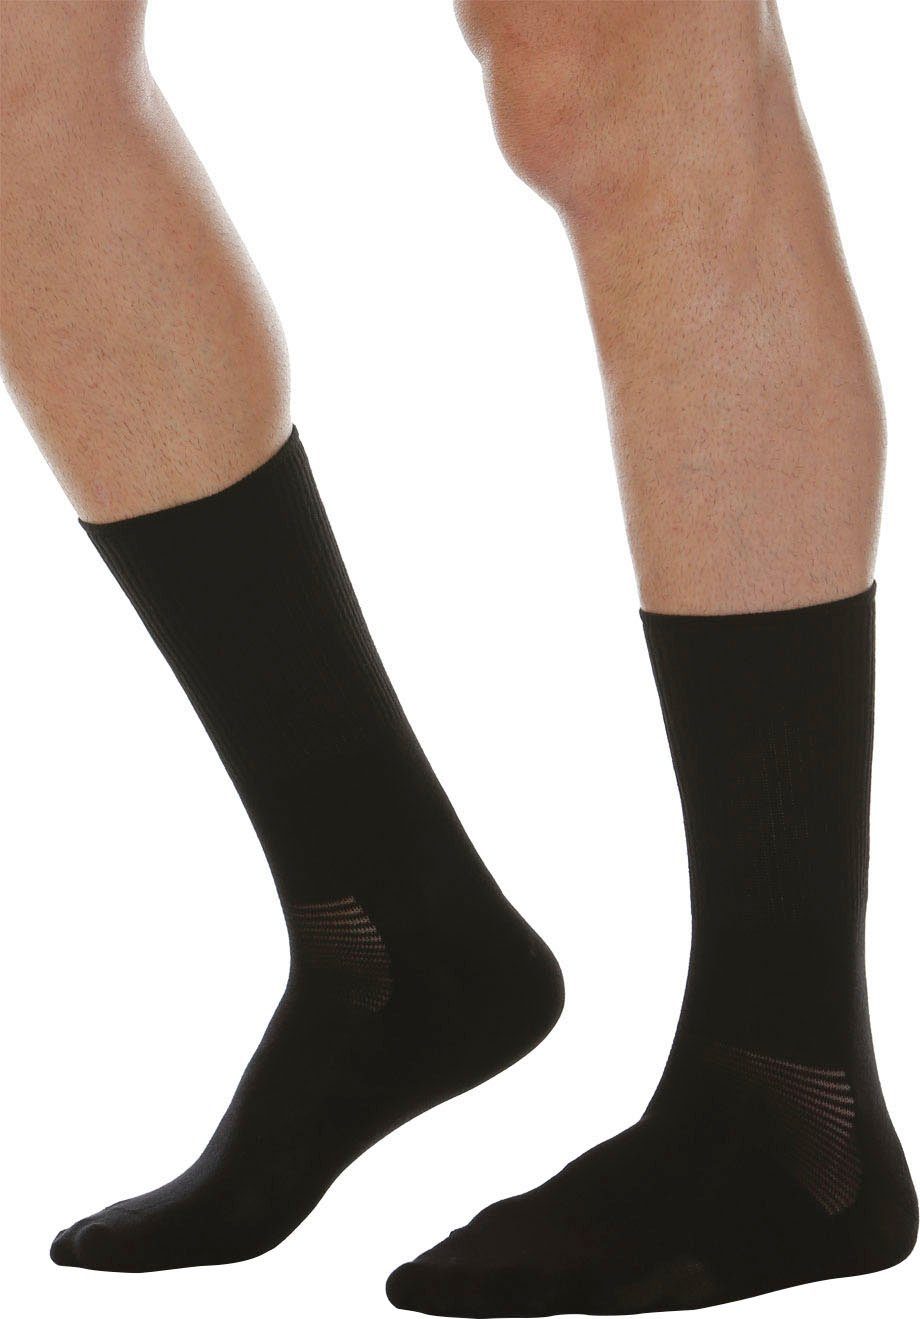 Crabyonfaser schwarz Diabetic Socke RELAXSAN (1-Paar) mit Diabetikersocken